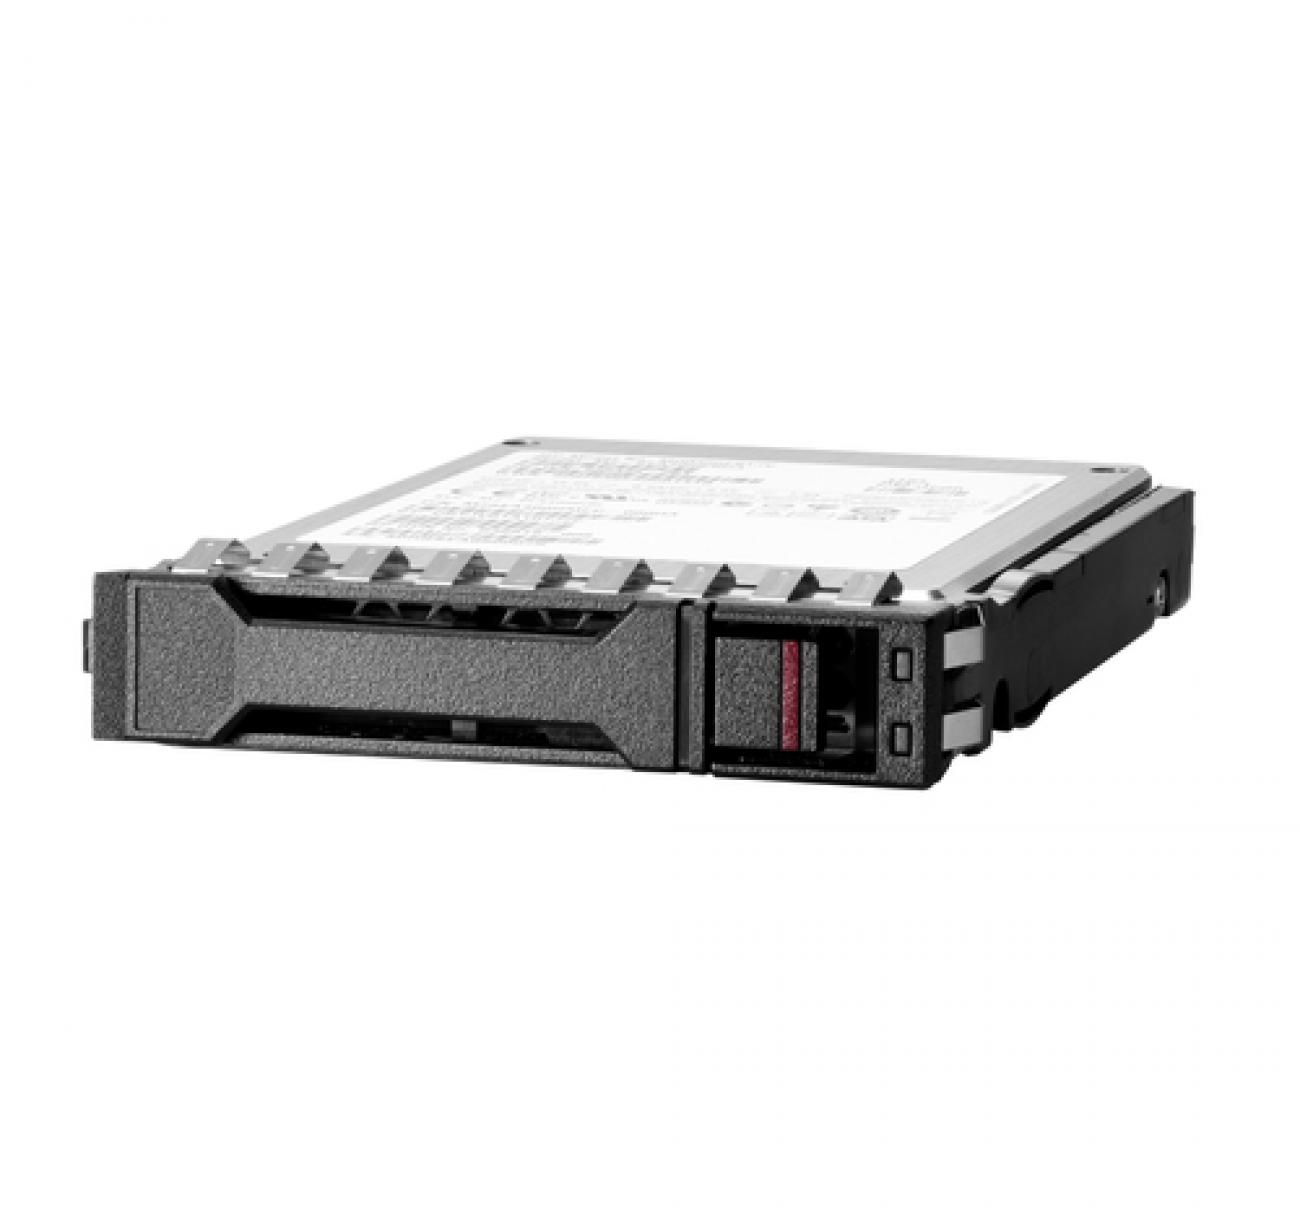 HPE HDD SERVER 2.4TB SAS 10K SFF BC 512E MV